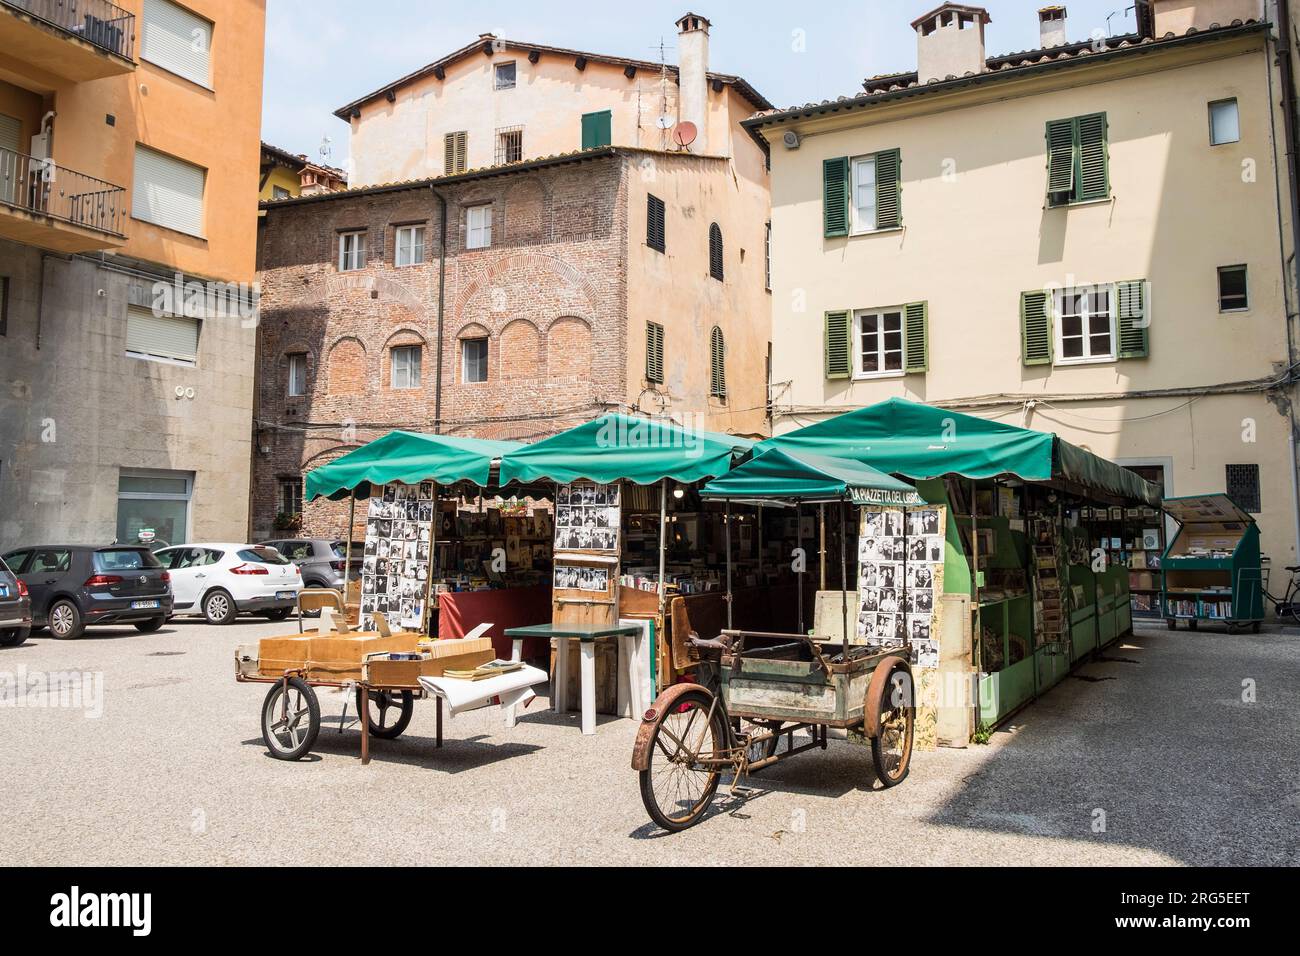 Italy, Tuscany, Lucca, Piazzetta del libro, book square Stock Photo - Alamy